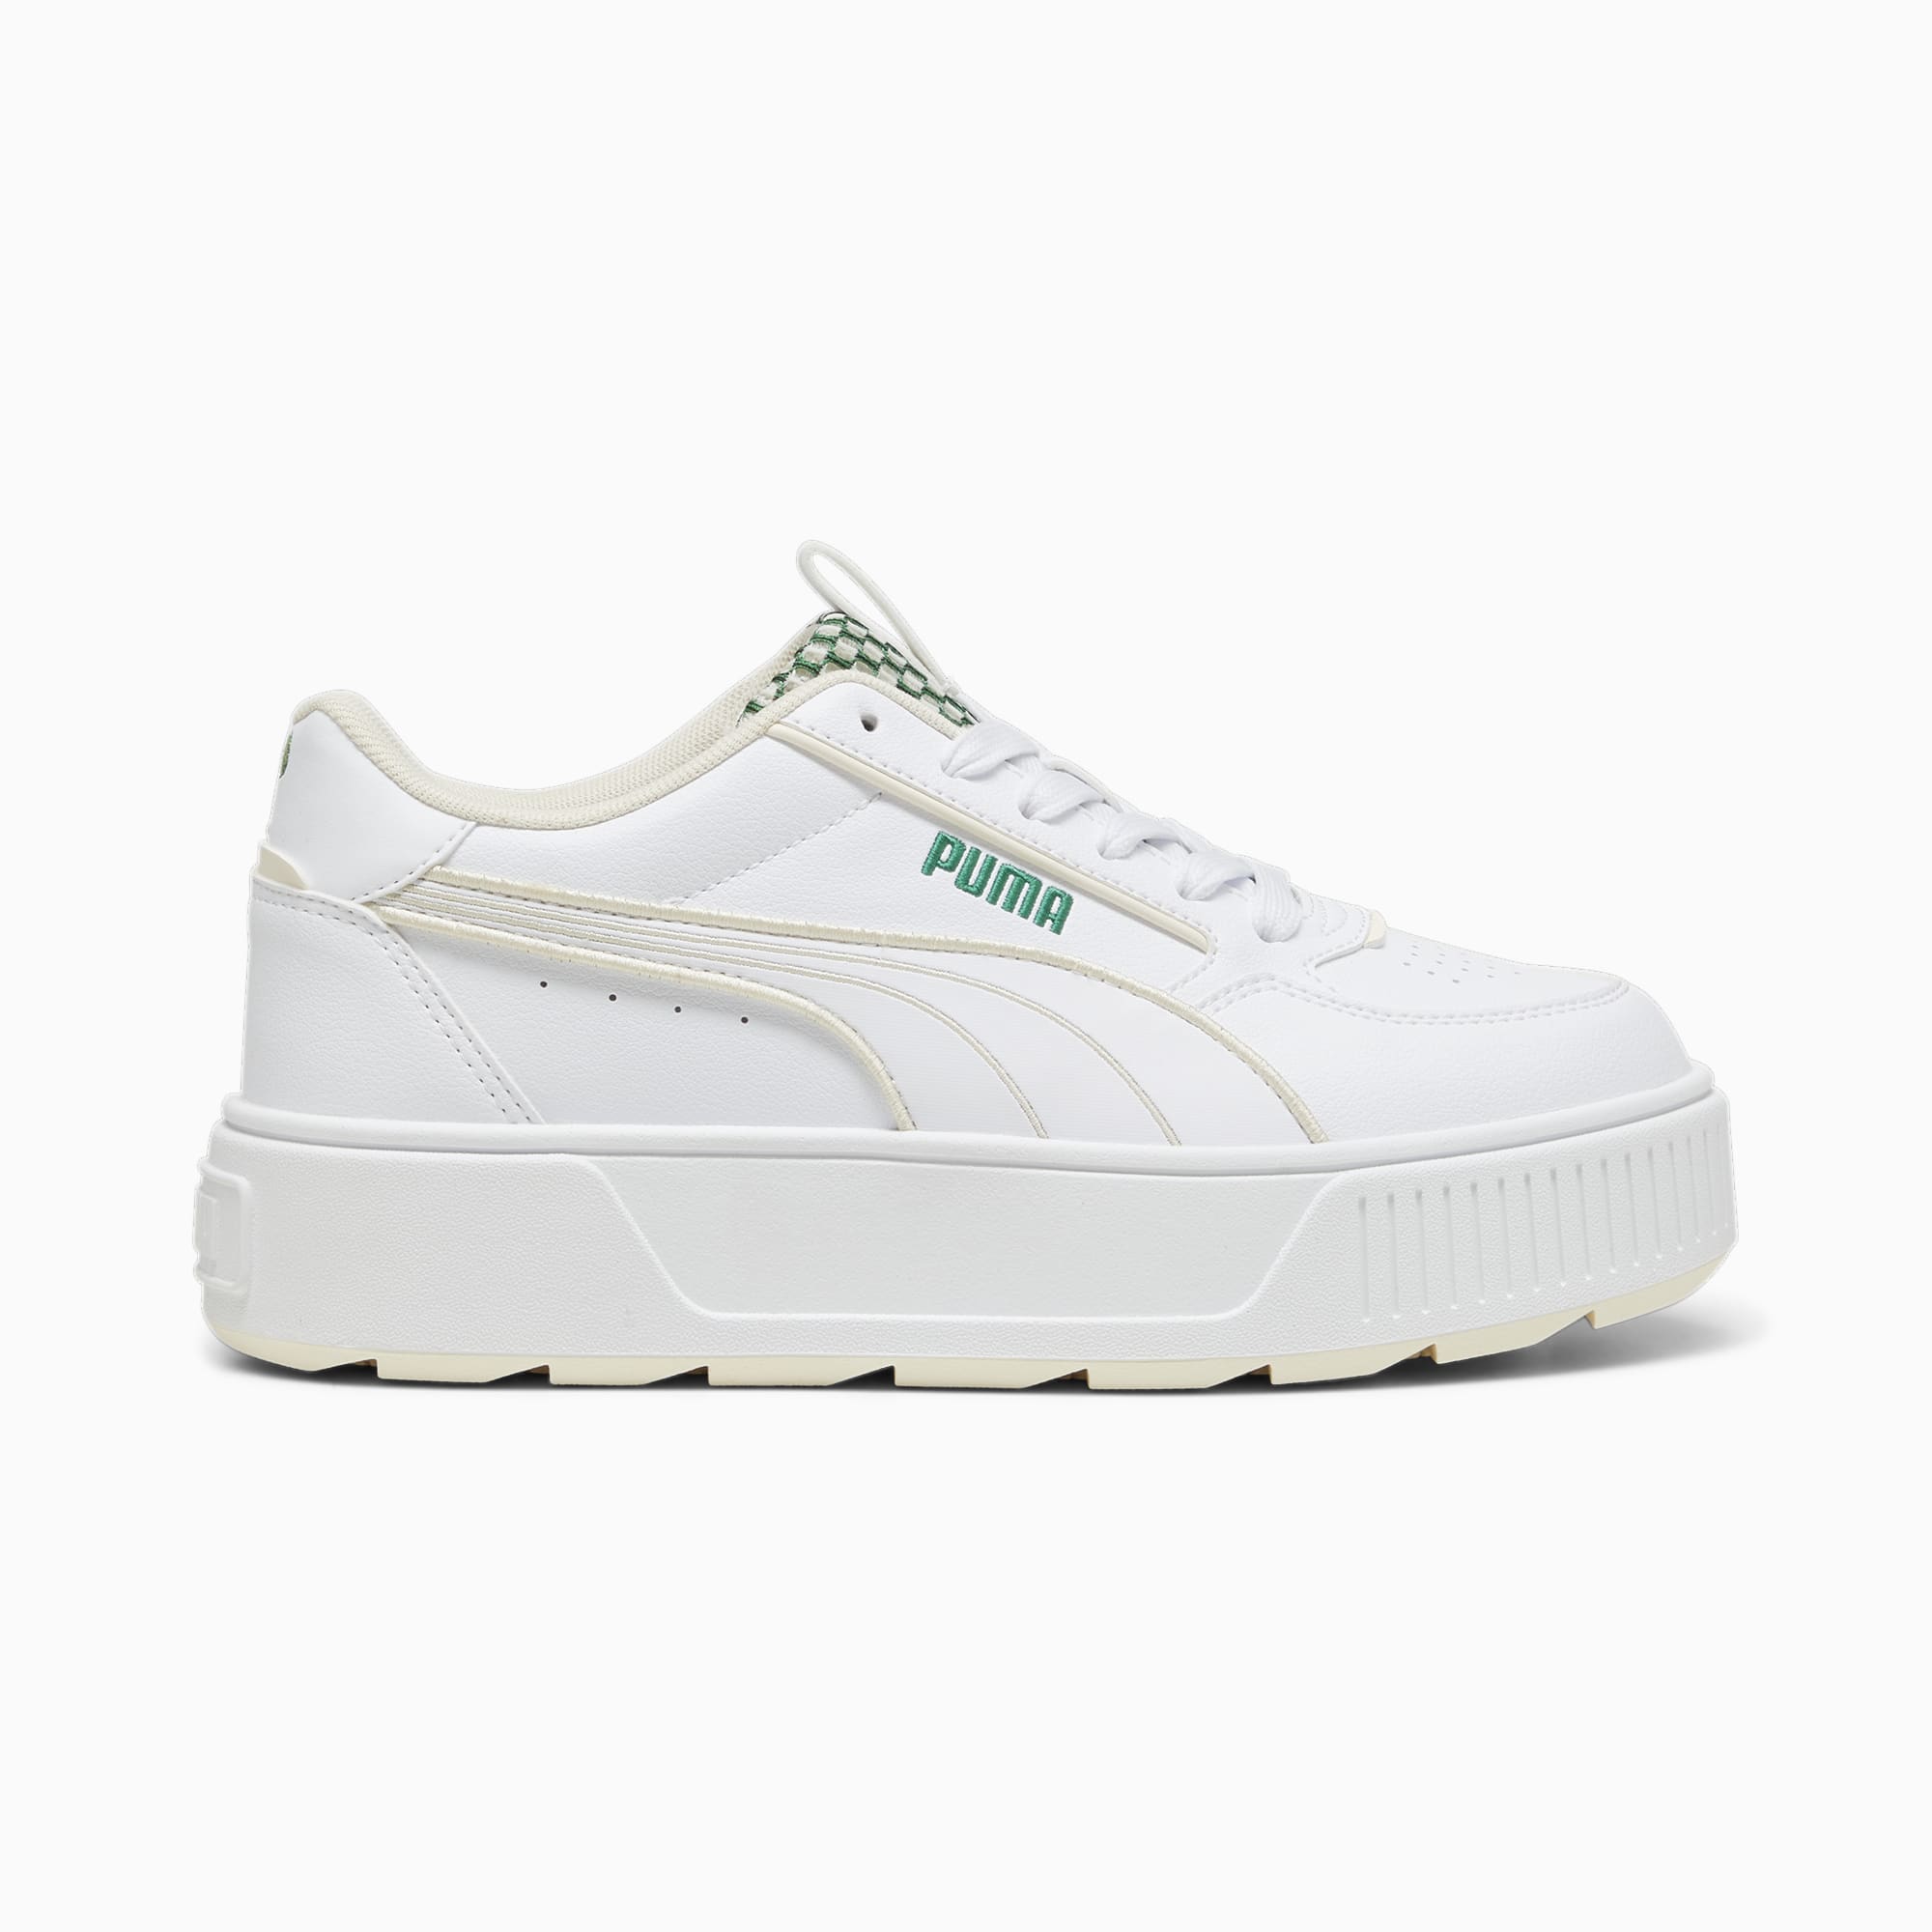 Women's PUMA Karmen Rebelle Blossom Sneakers, White/Sugared Almond/Archive Green